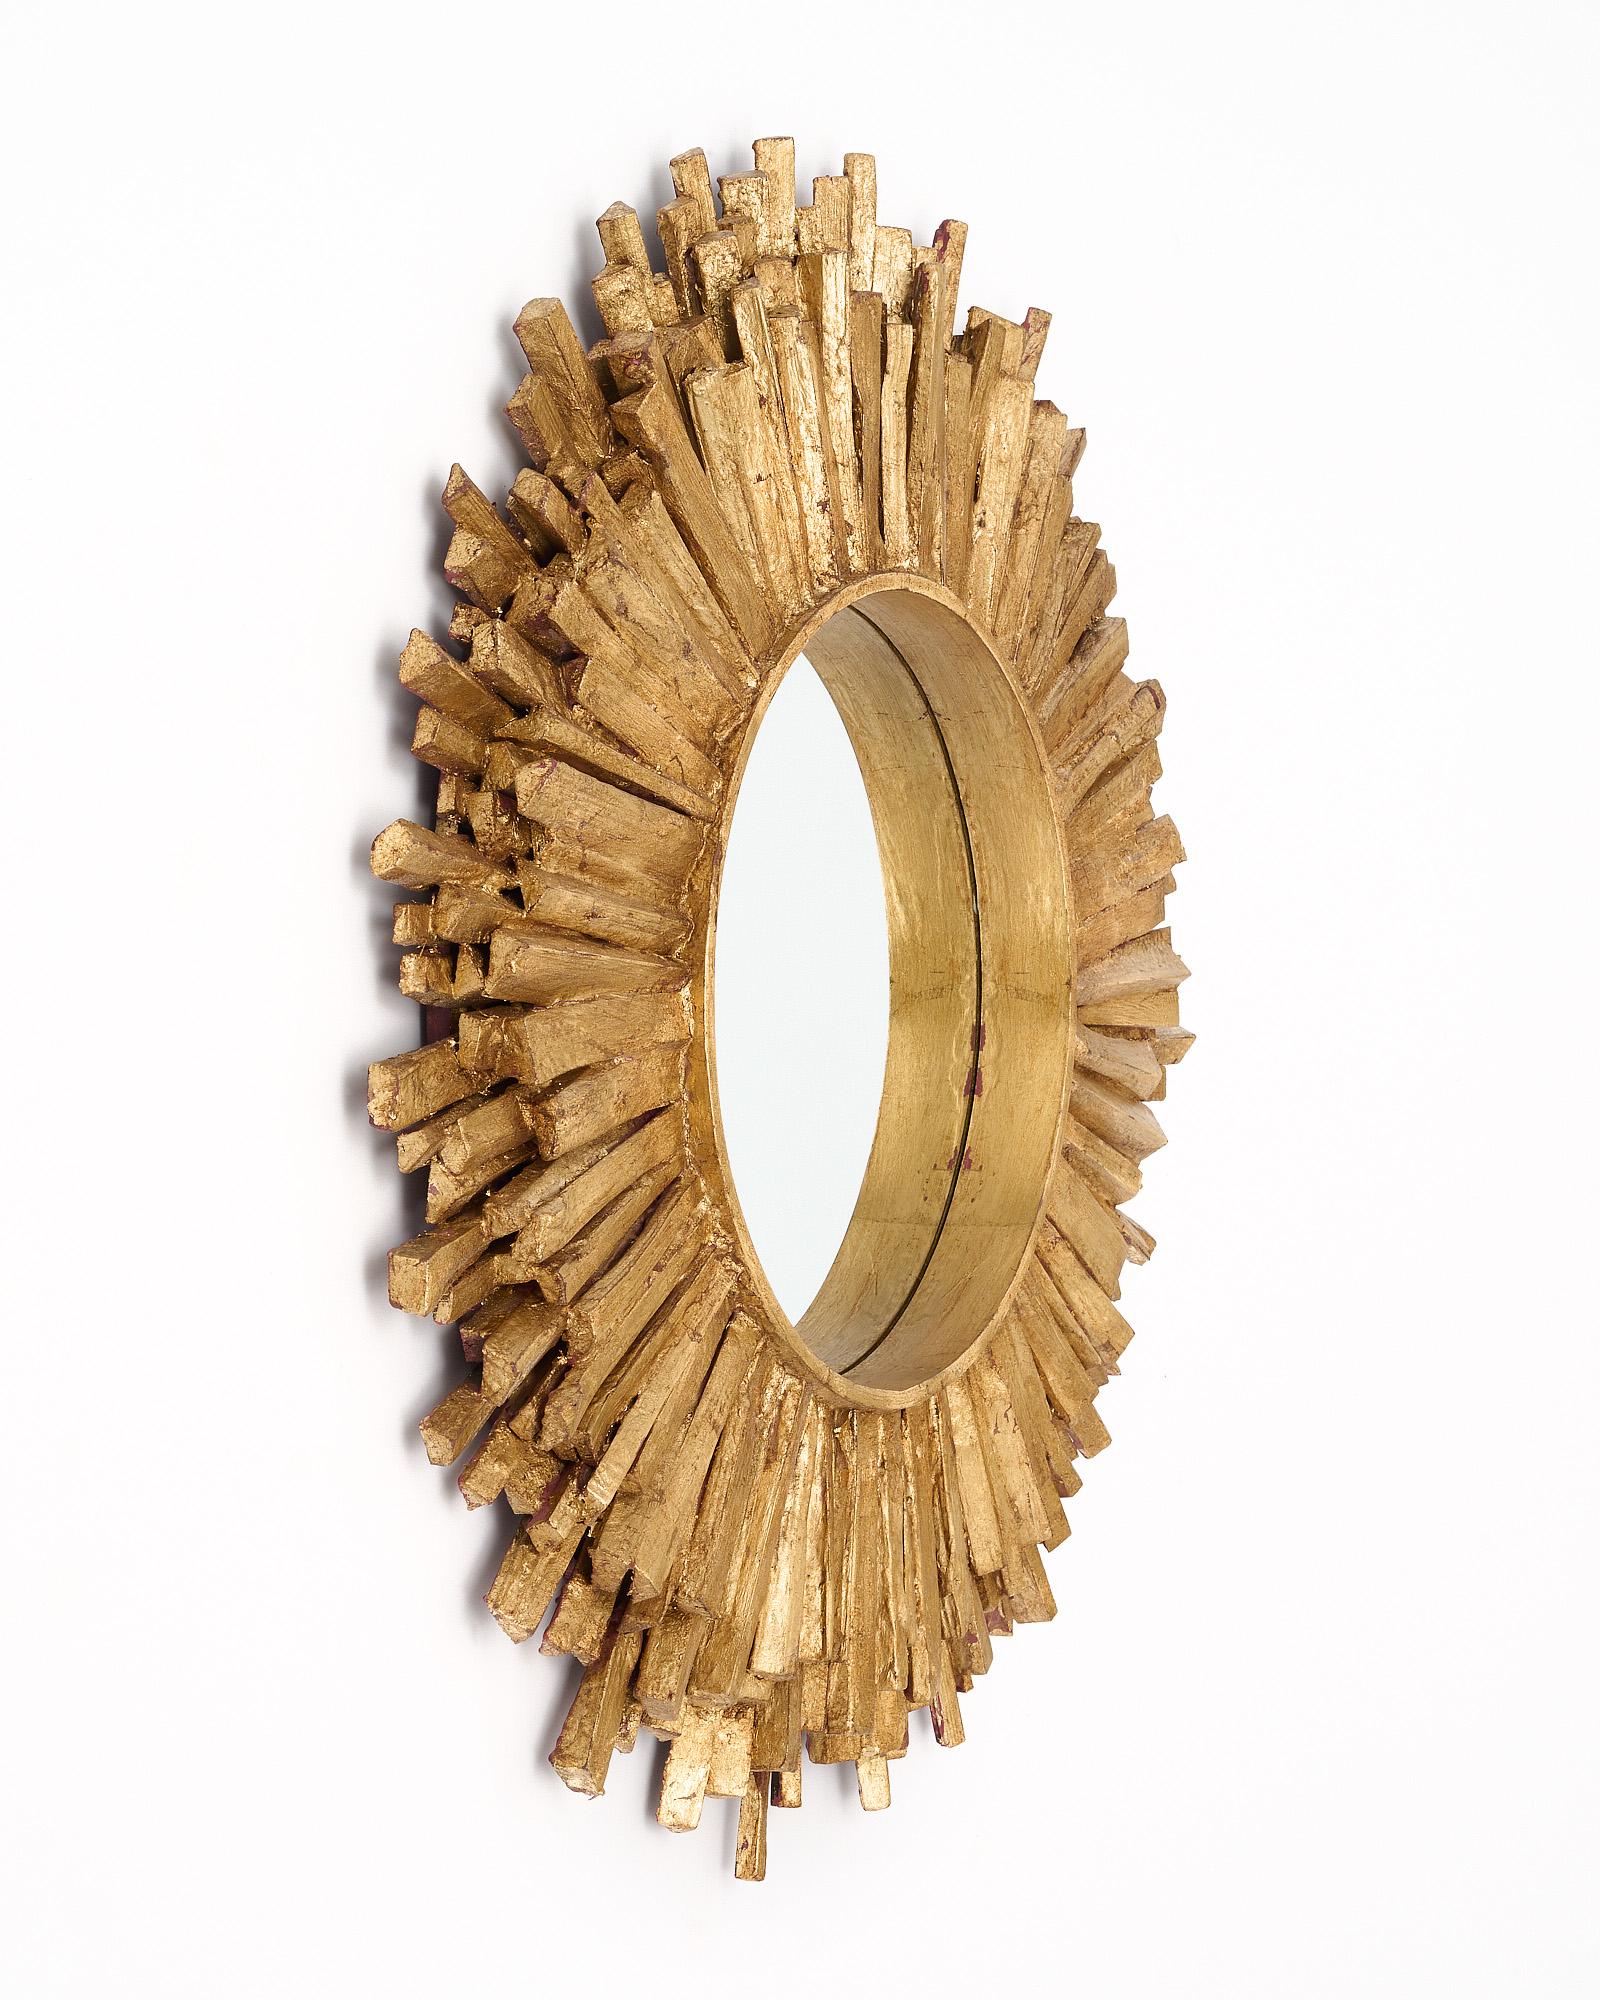 Sunburst-Spiegel aus Spanien mit kreisförmigem Zentralspiegel und nach außen verlaufenden, mit Blattgold belegten Strahlen, die einen auffälligen Sunburst-Effekt bilden. Diese hochdekorativen Stücke sind sehr effektiv.